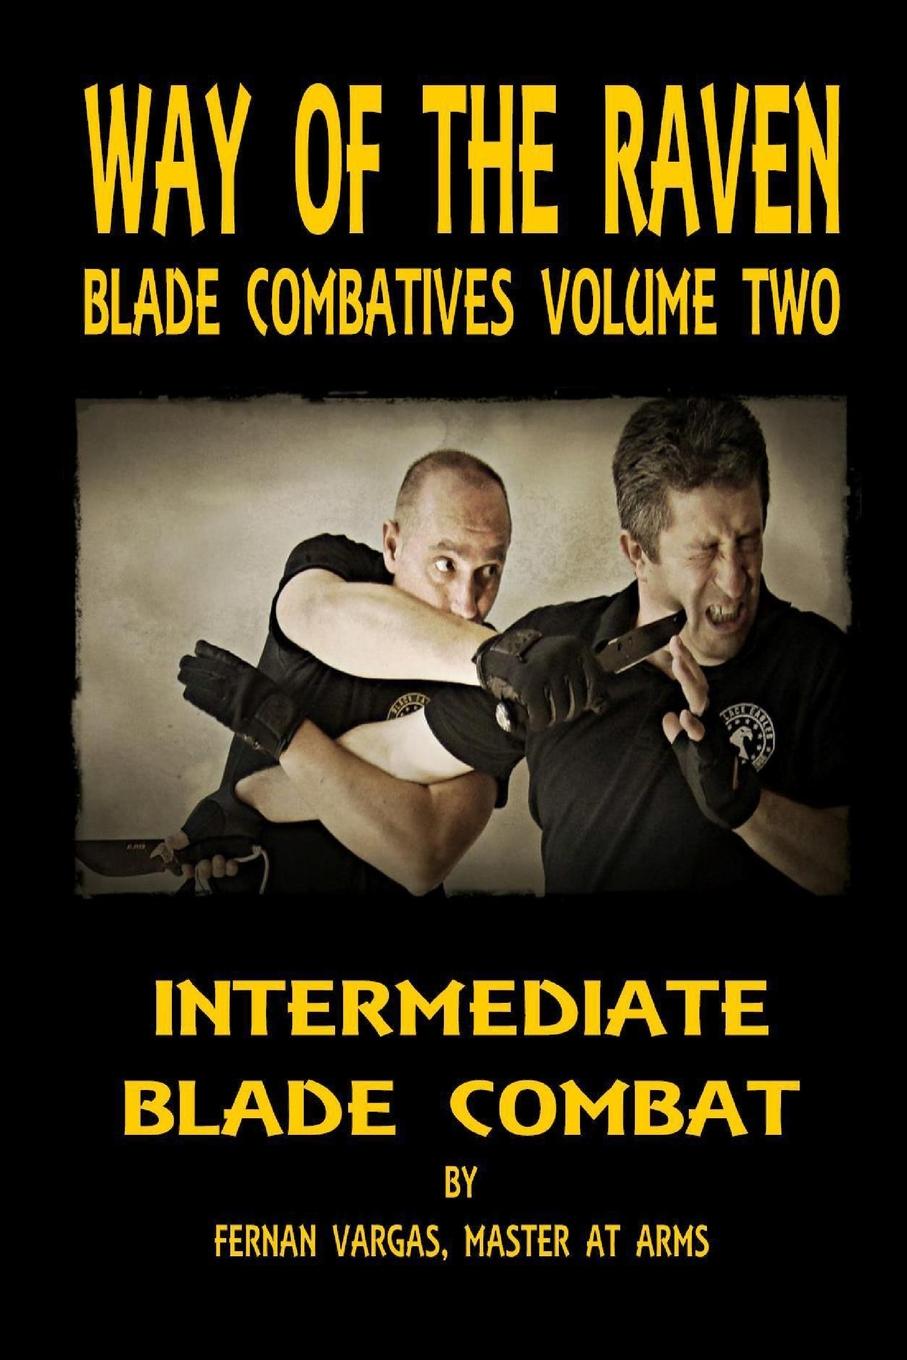 Way of the Raven Blade Combatives. Intermediate Blade Combat